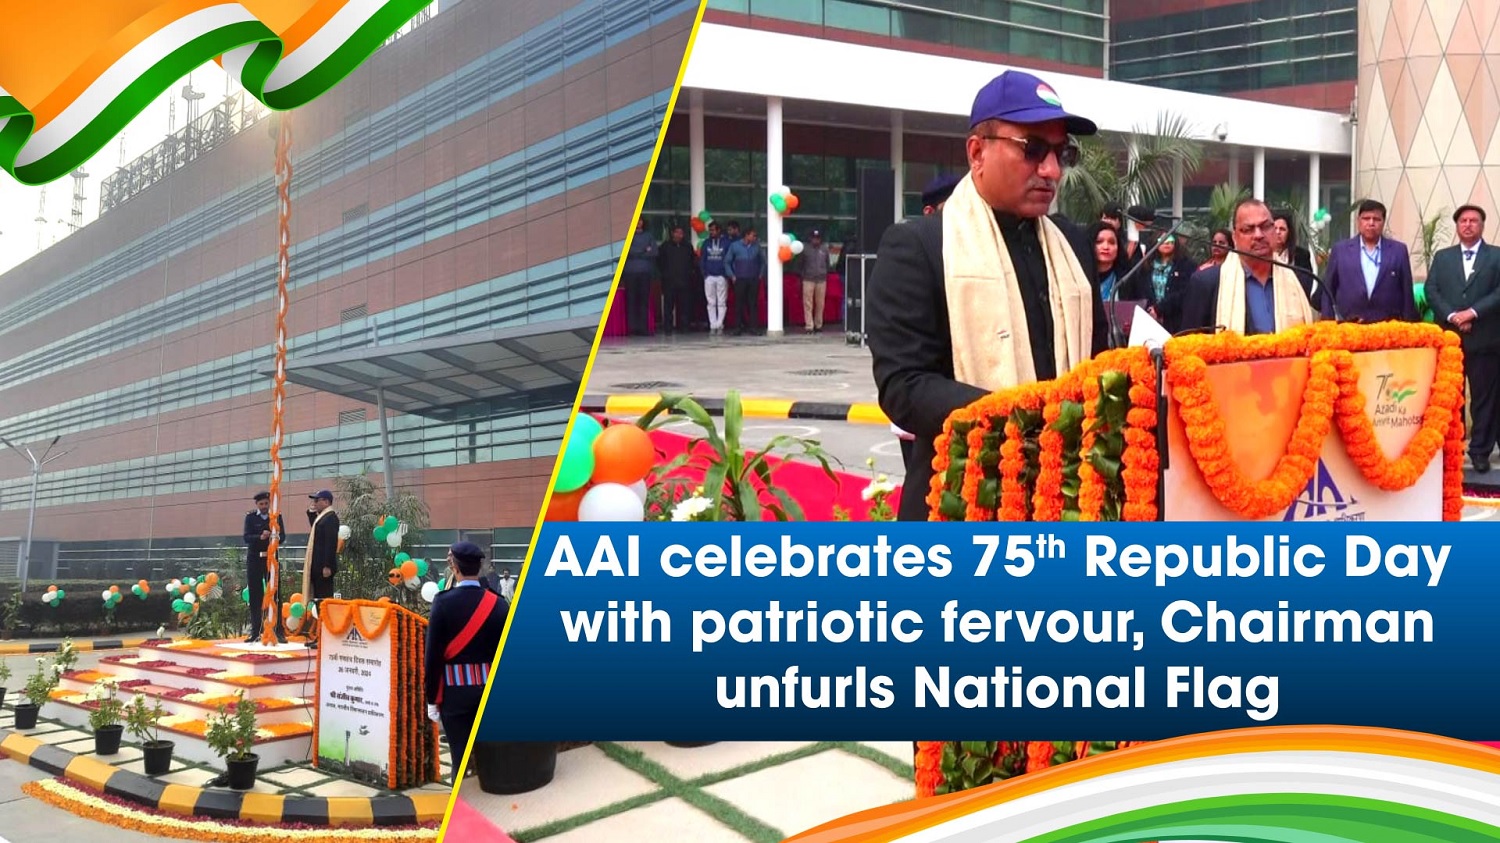 AAI celebrates 75th Republic Day with patriotic fervour